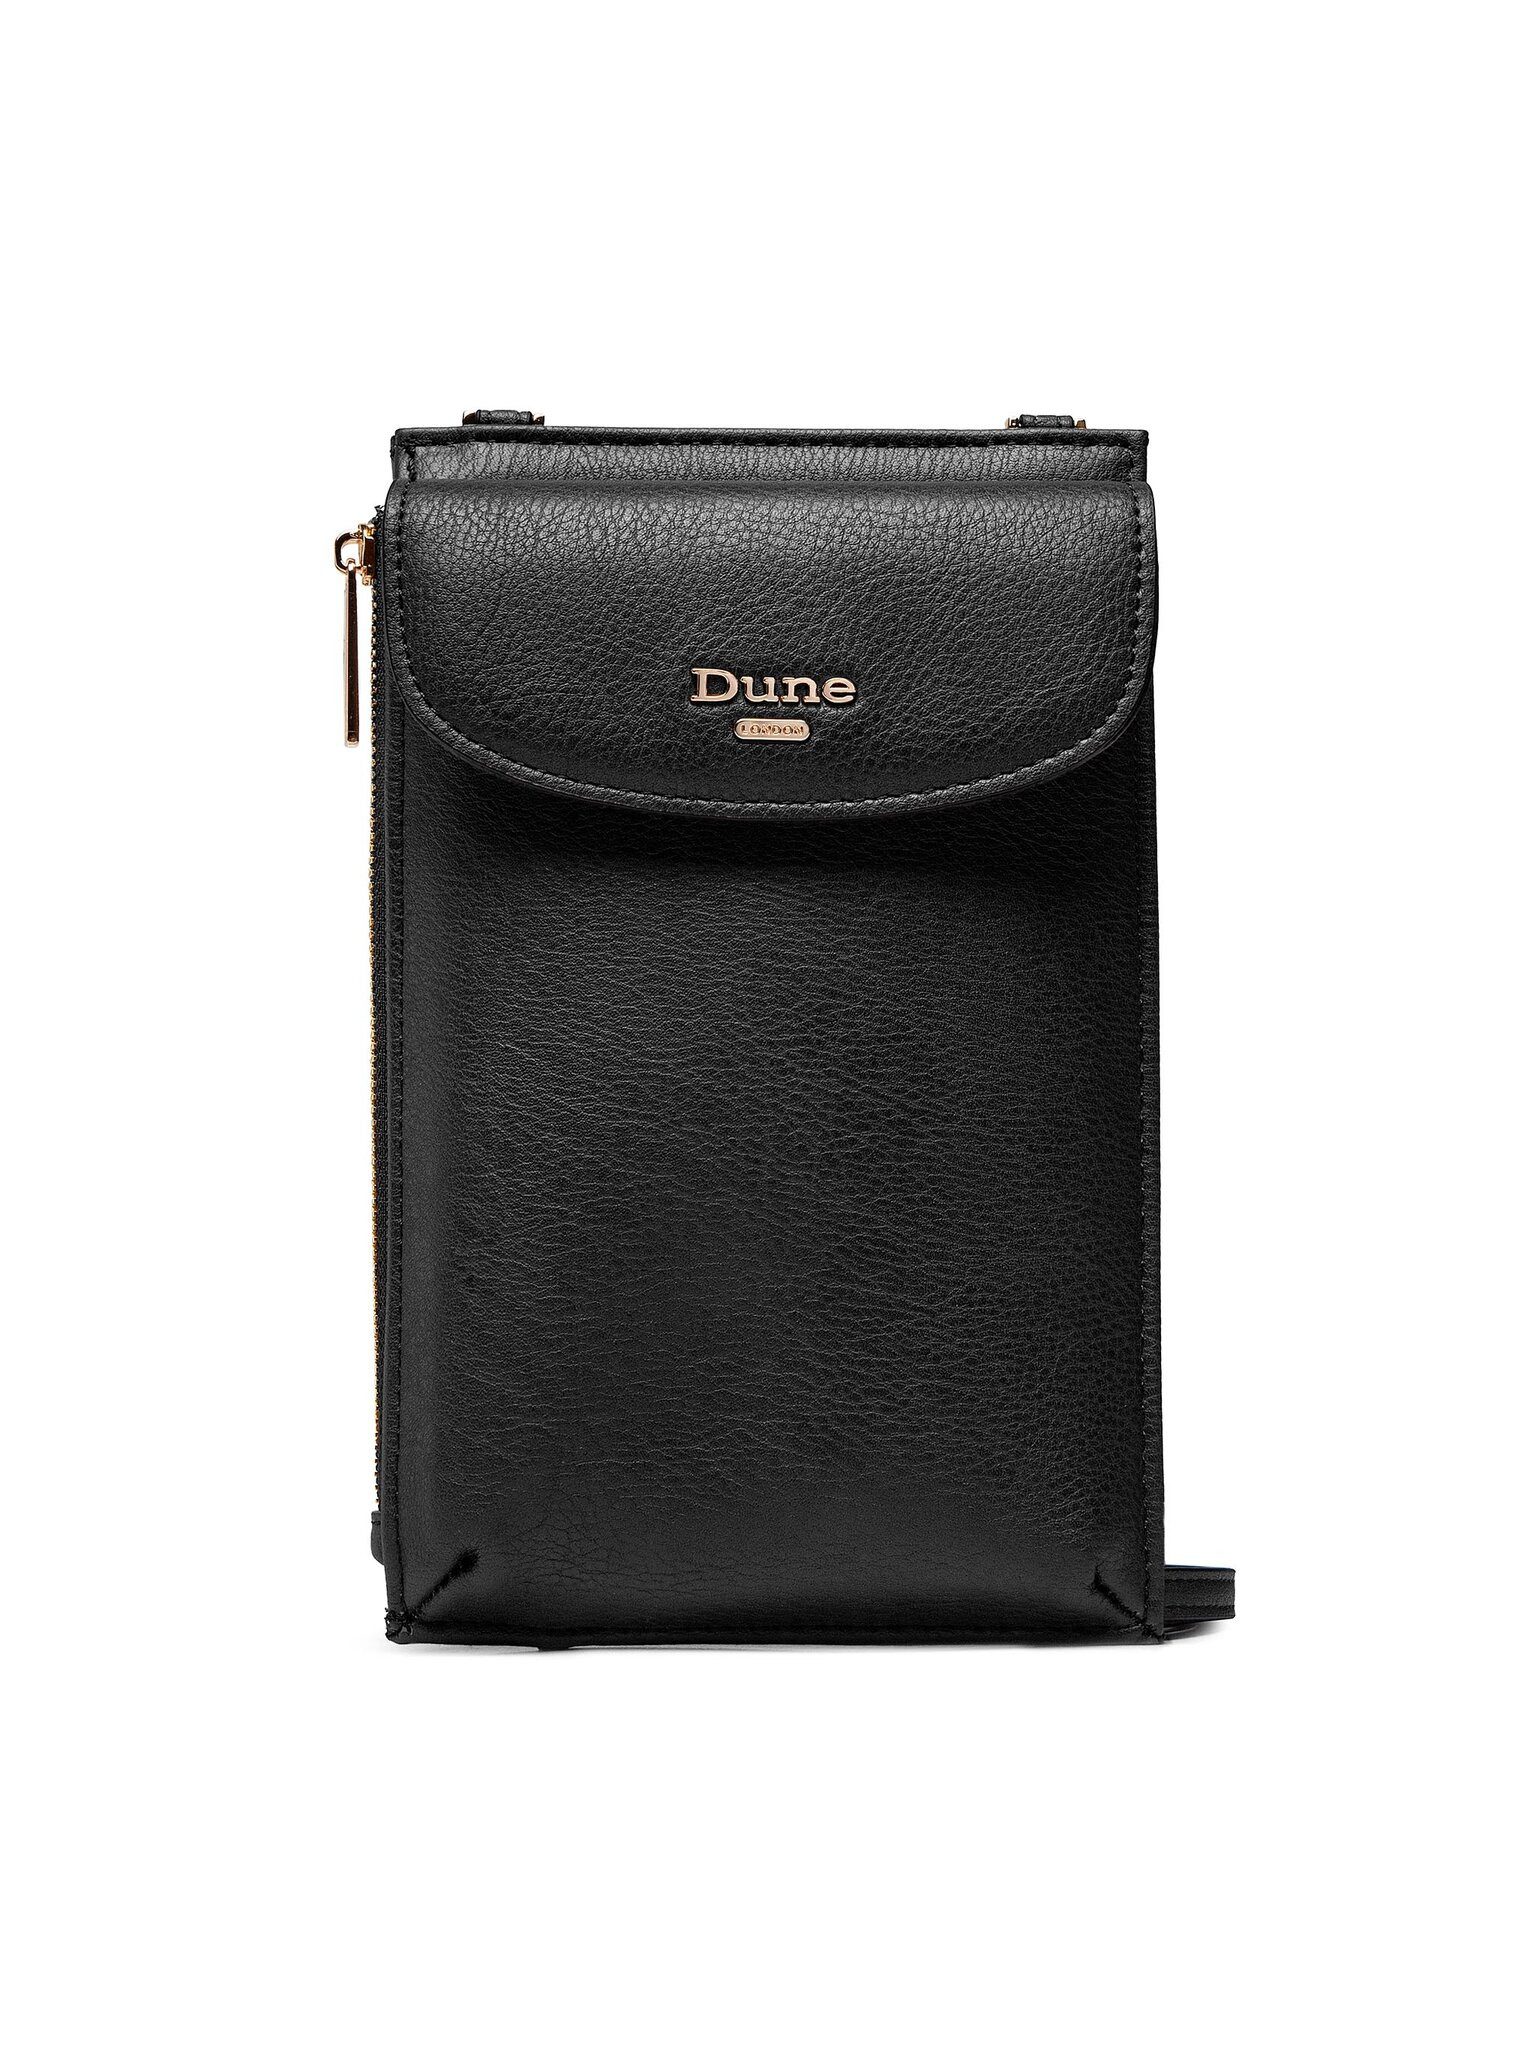 Dune London Handtasche Handtasche Shelbee 2003500110030028 Black